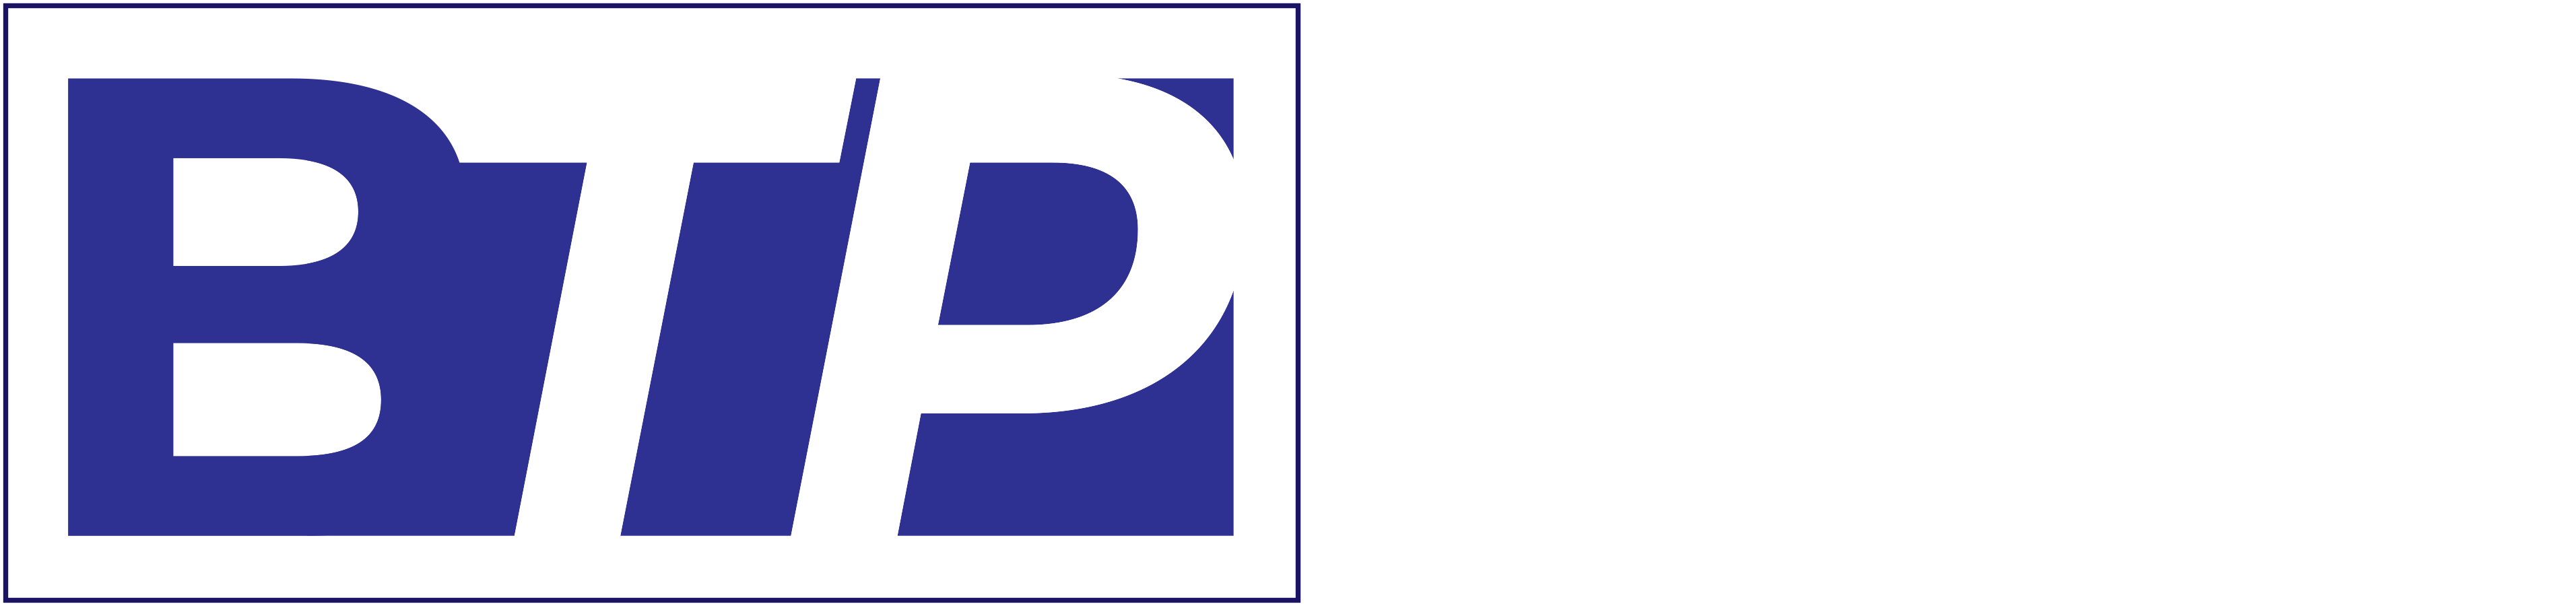 Em caixa alta, as letras B, T e P. A letra B é azul em fundo branco, e as letras T e P são brancas em um fundo azul.